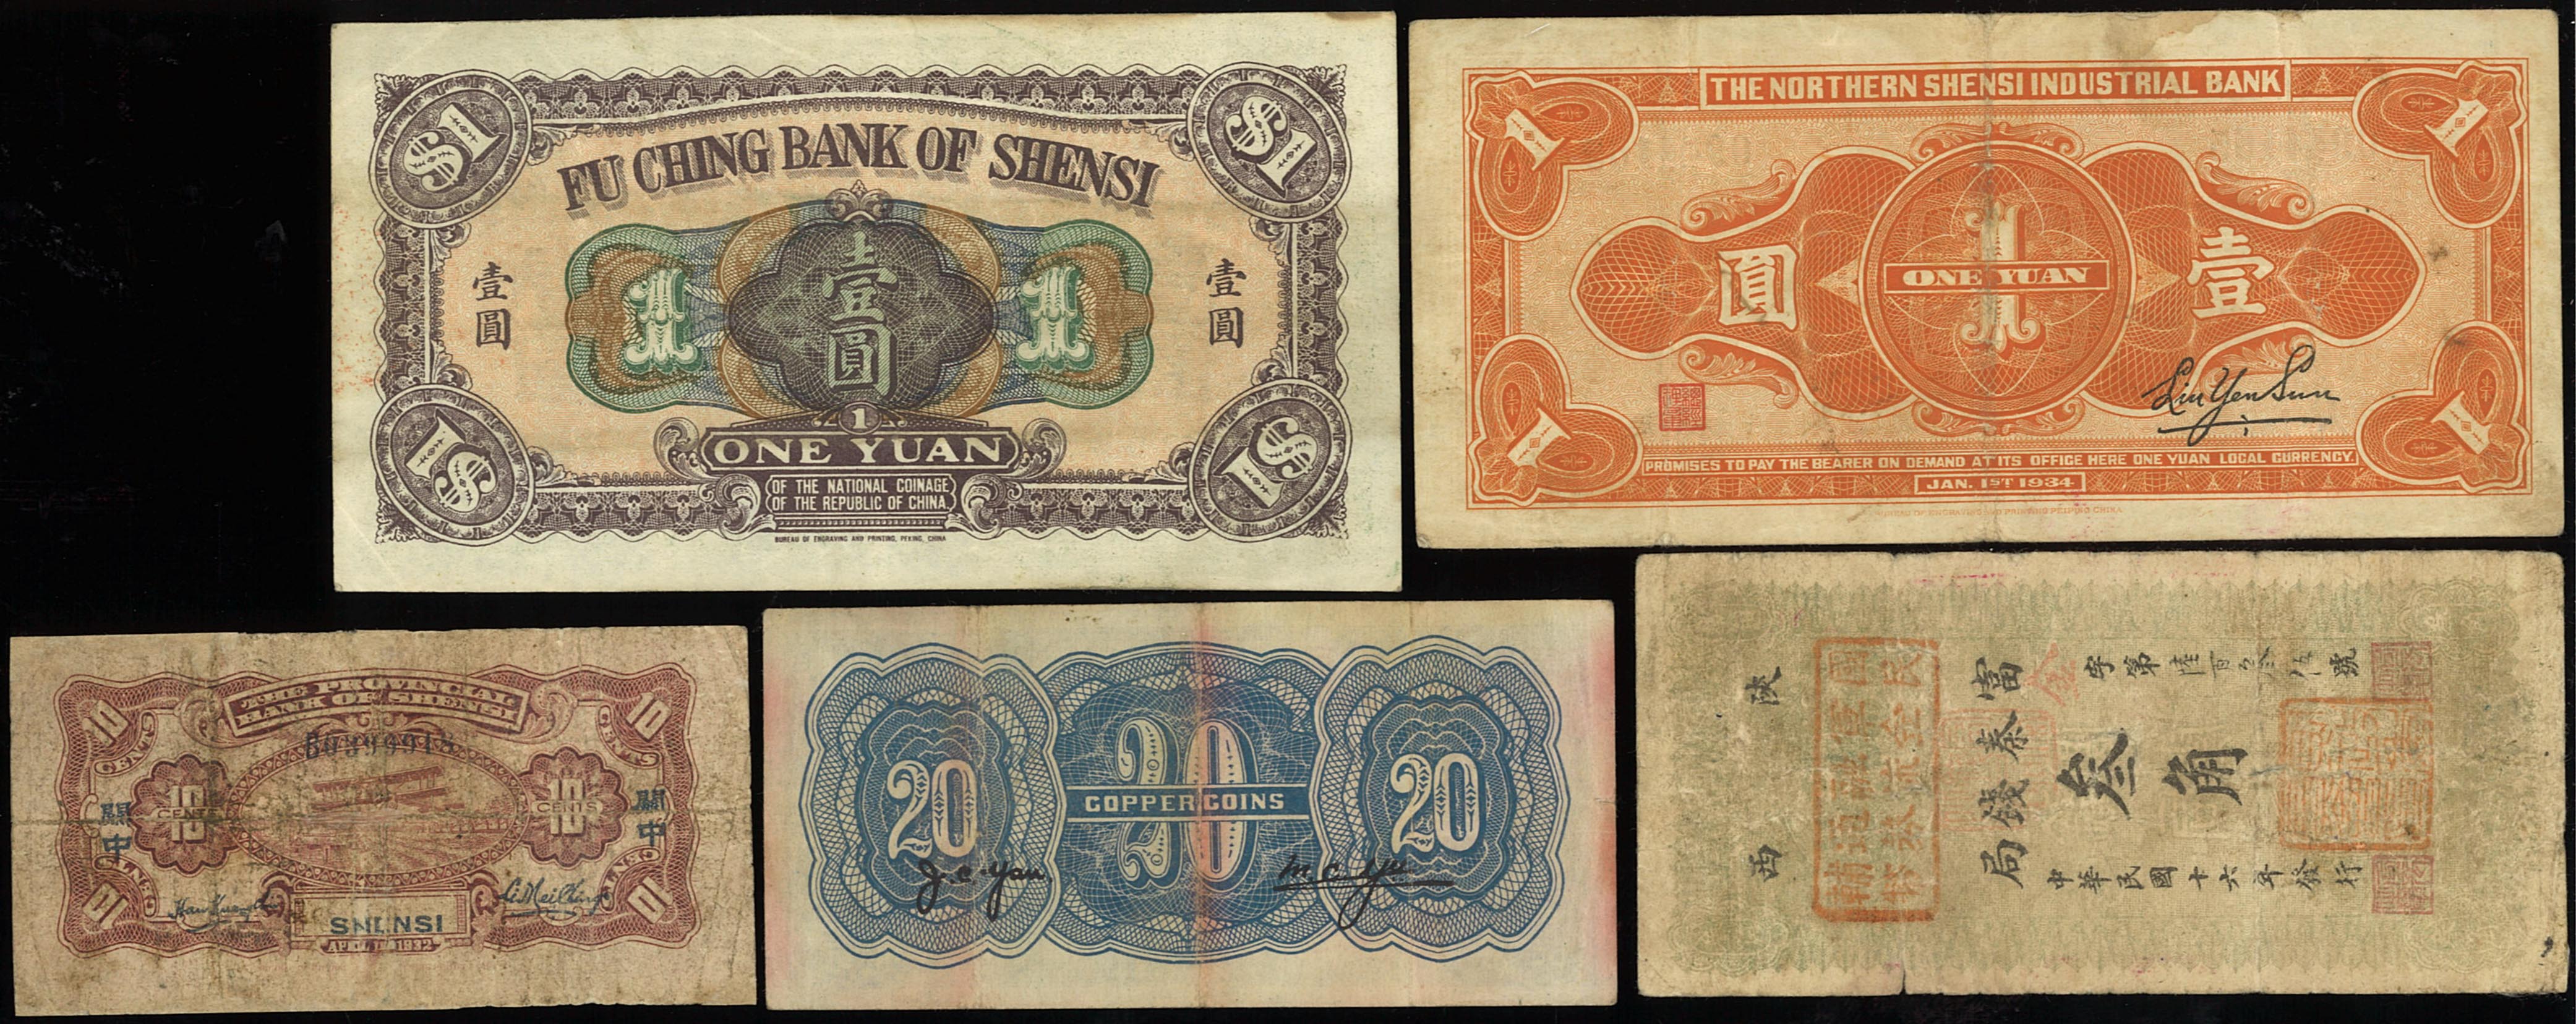 貨幣博物館 | 紙幣 Banknotes 陝北地方實業銀行 銅元貳拾枚